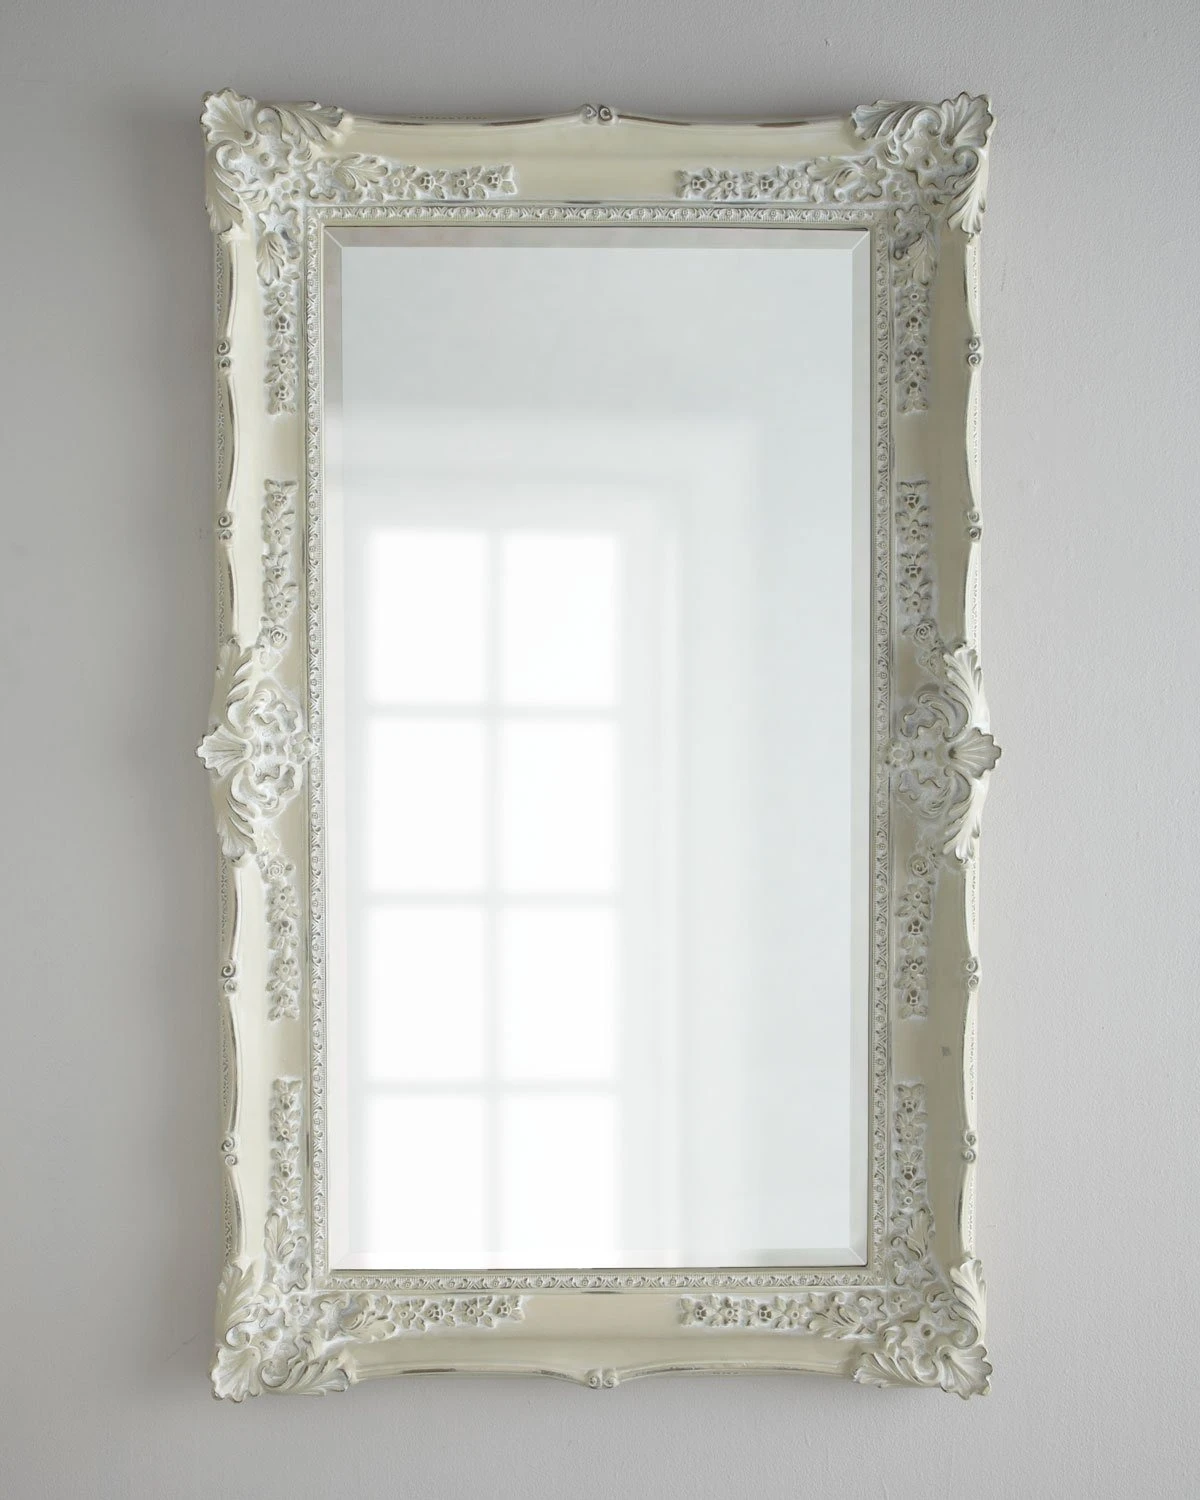 Напольное зеркало в классическом интерьерном багете цвета прованс Ла Манш.png